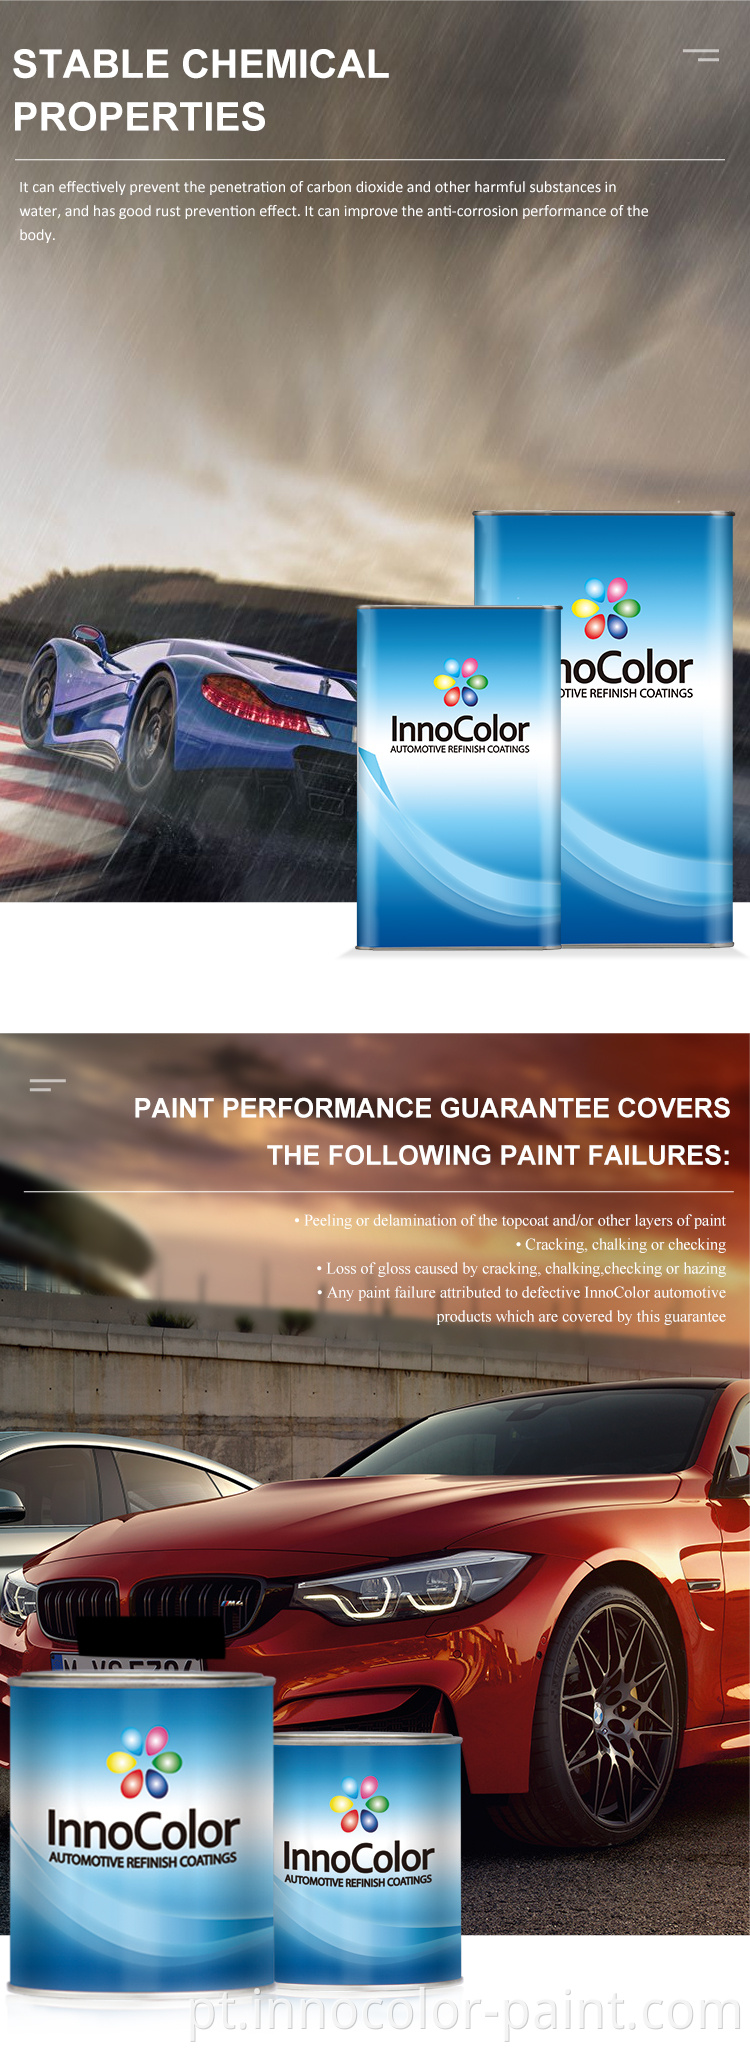 Tinta de carro innocolor fabrica preços alto fornecedor de tinta automotiva sólida fornecedor de tinta de alta performance pintura de carro